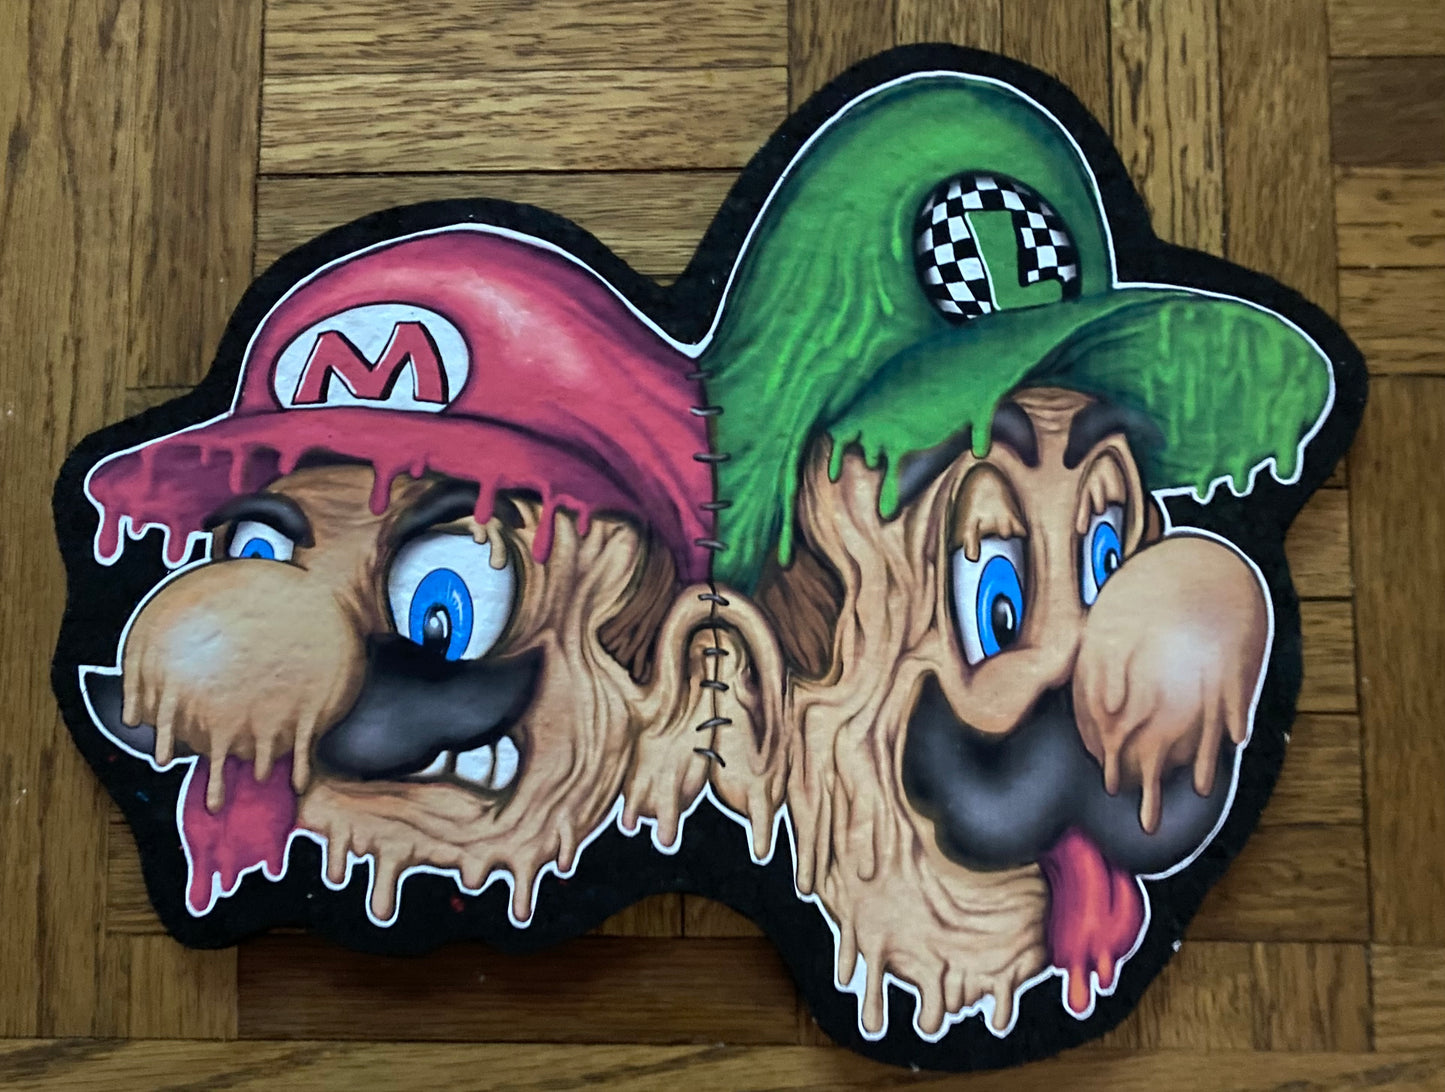 Stitched Mario and Luigi